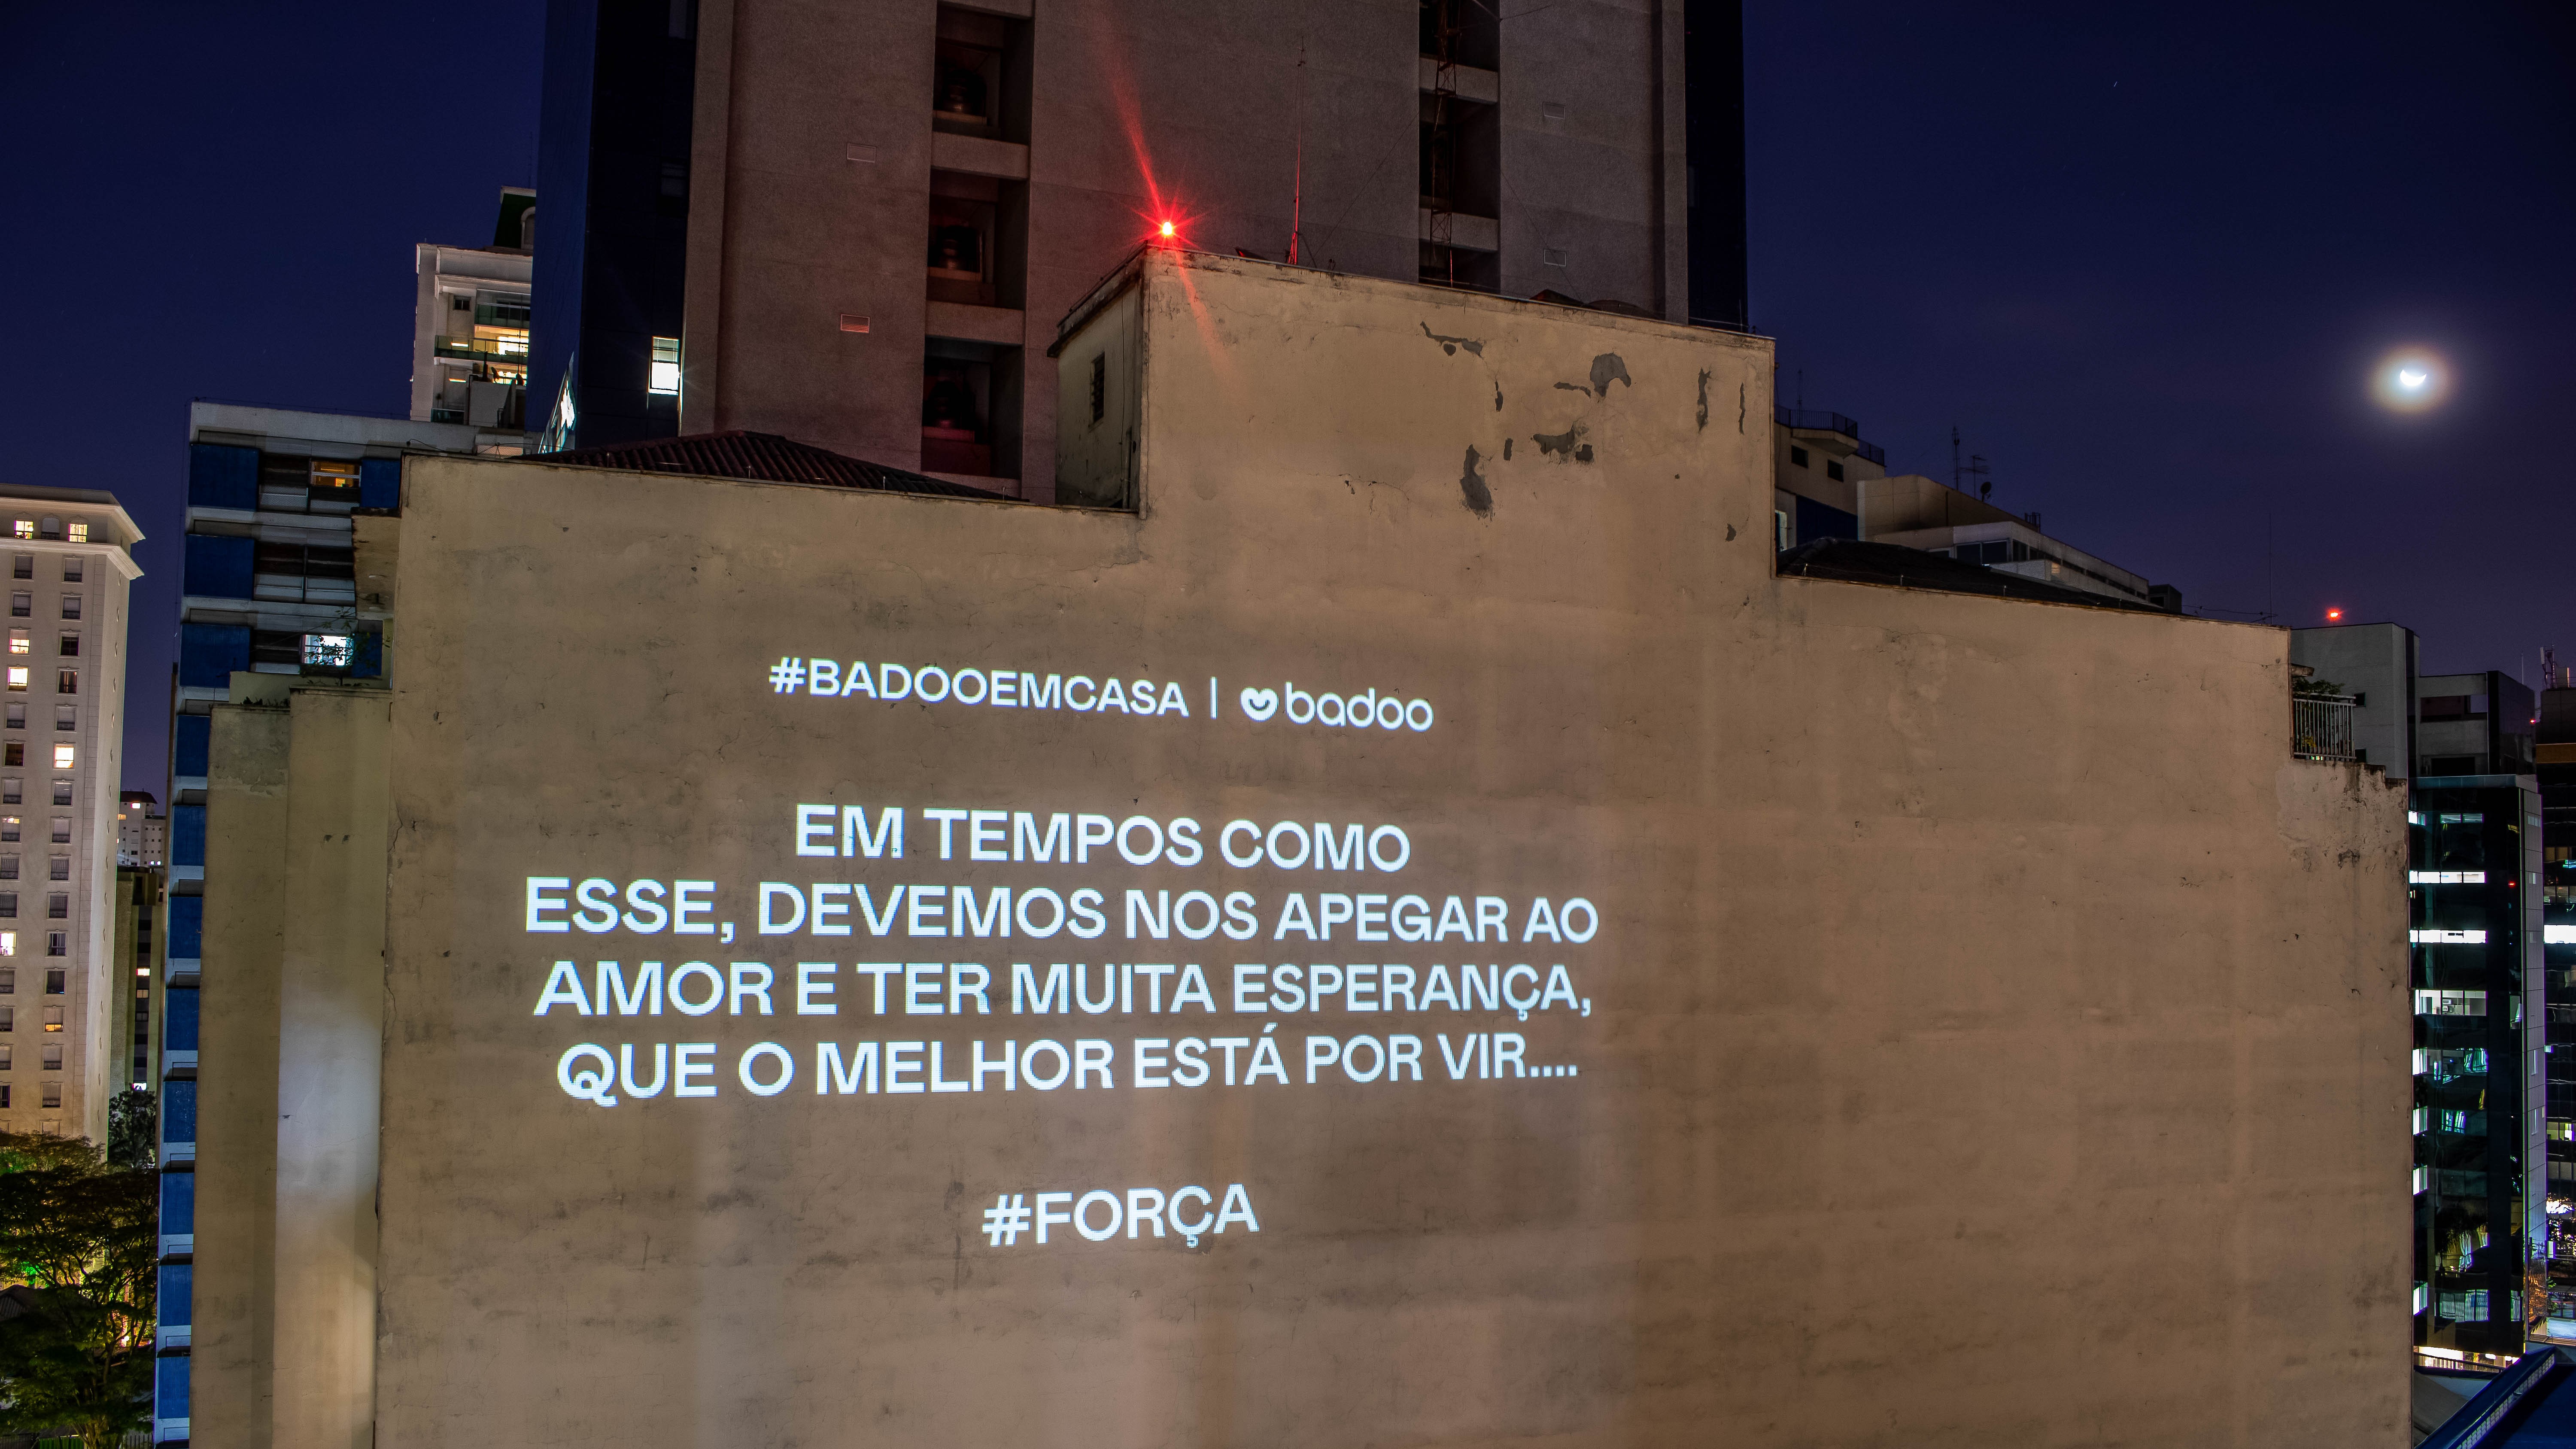 Campanha projeta mensagens positivas em prédios para celebrar o amor (Foto: Divulgação)